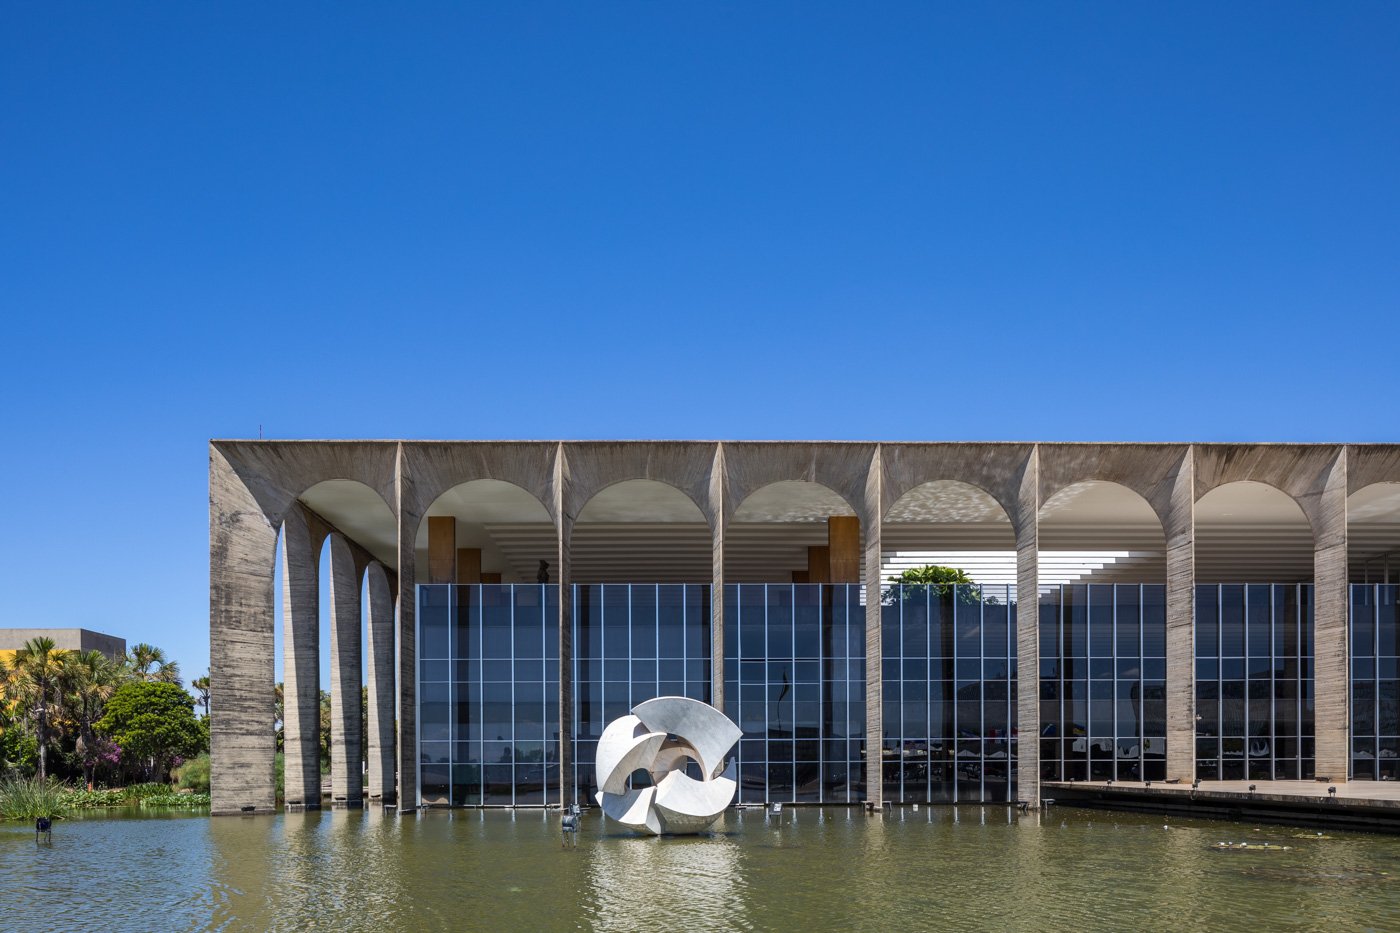 Itamaraty_Baixa - Brazilia - oscar Niemeyer